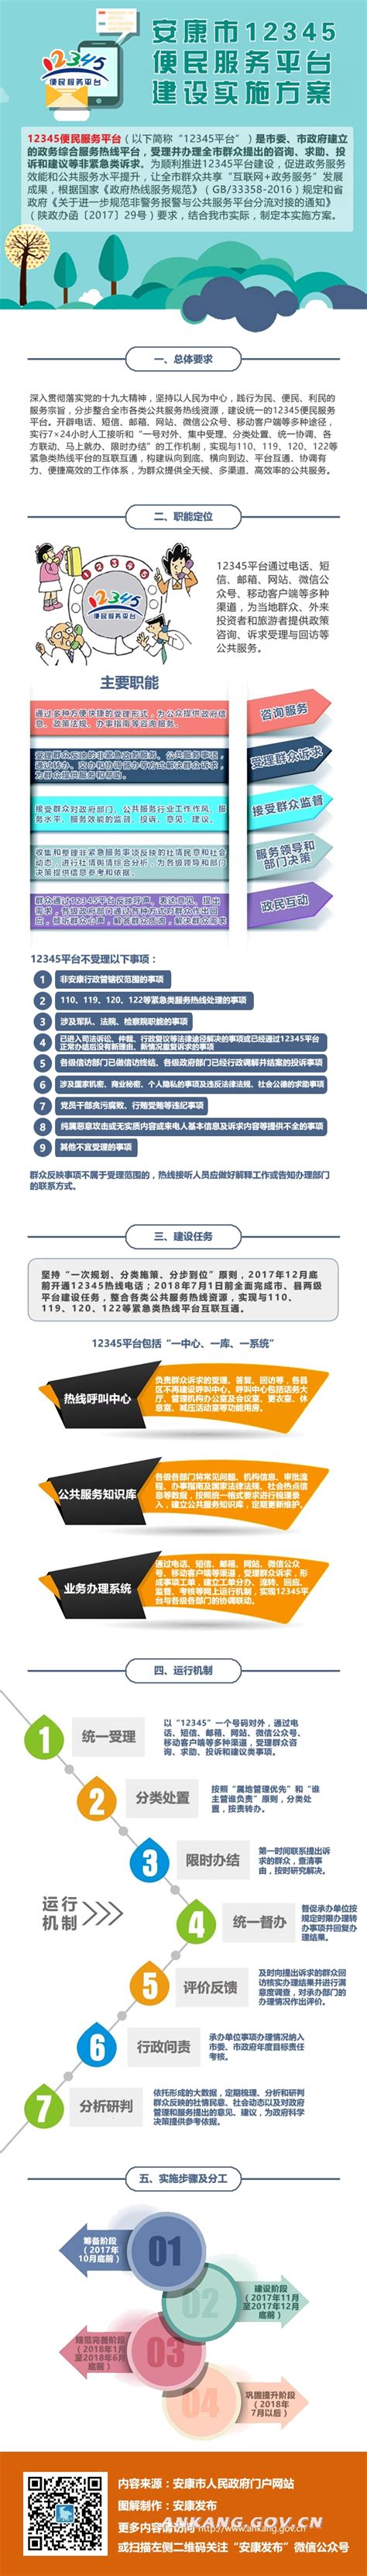 网站建设项目流程-享受北京网站建设的乐趣-荣友科技